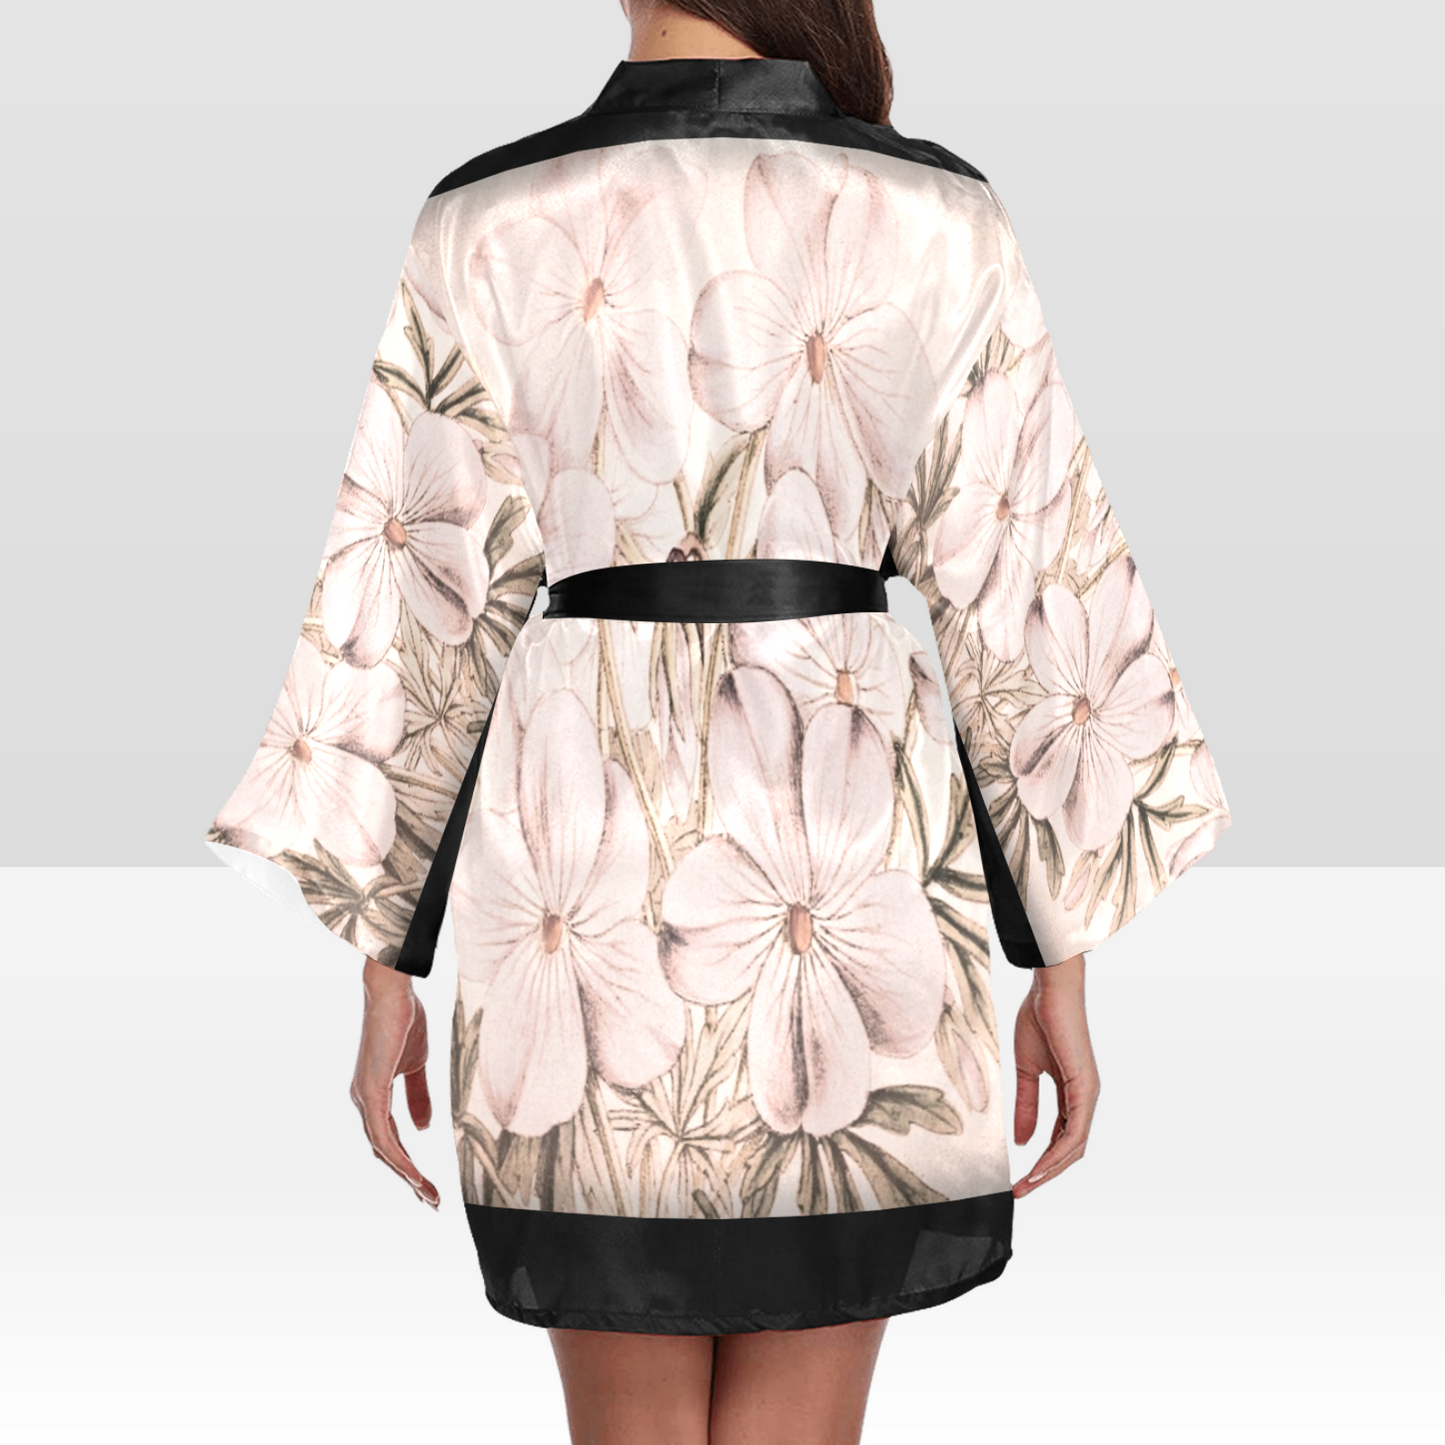 Vintage Floral Kimono Robe, Black or White Trim, Sizes XS to 2XL, Design 13x